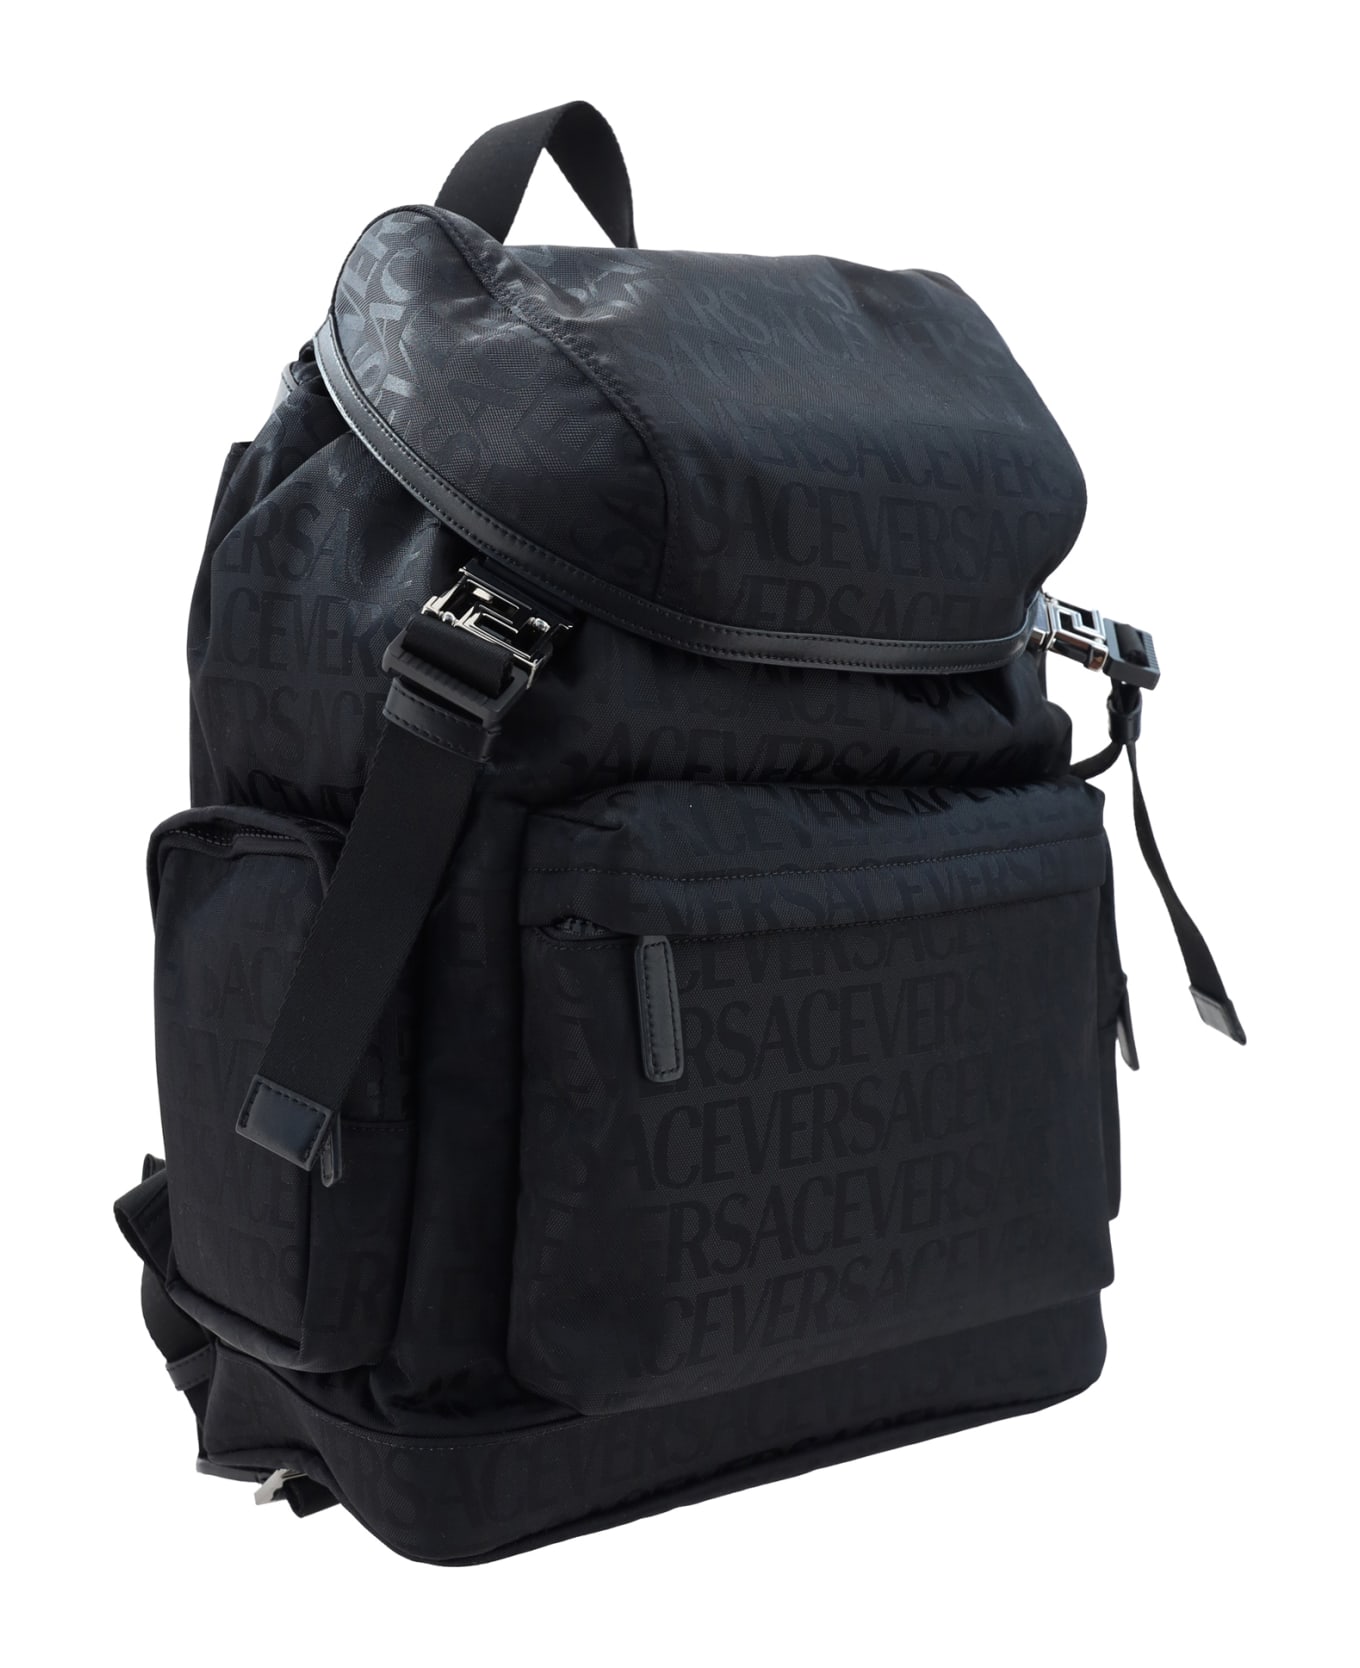 Versace Backpack - Black